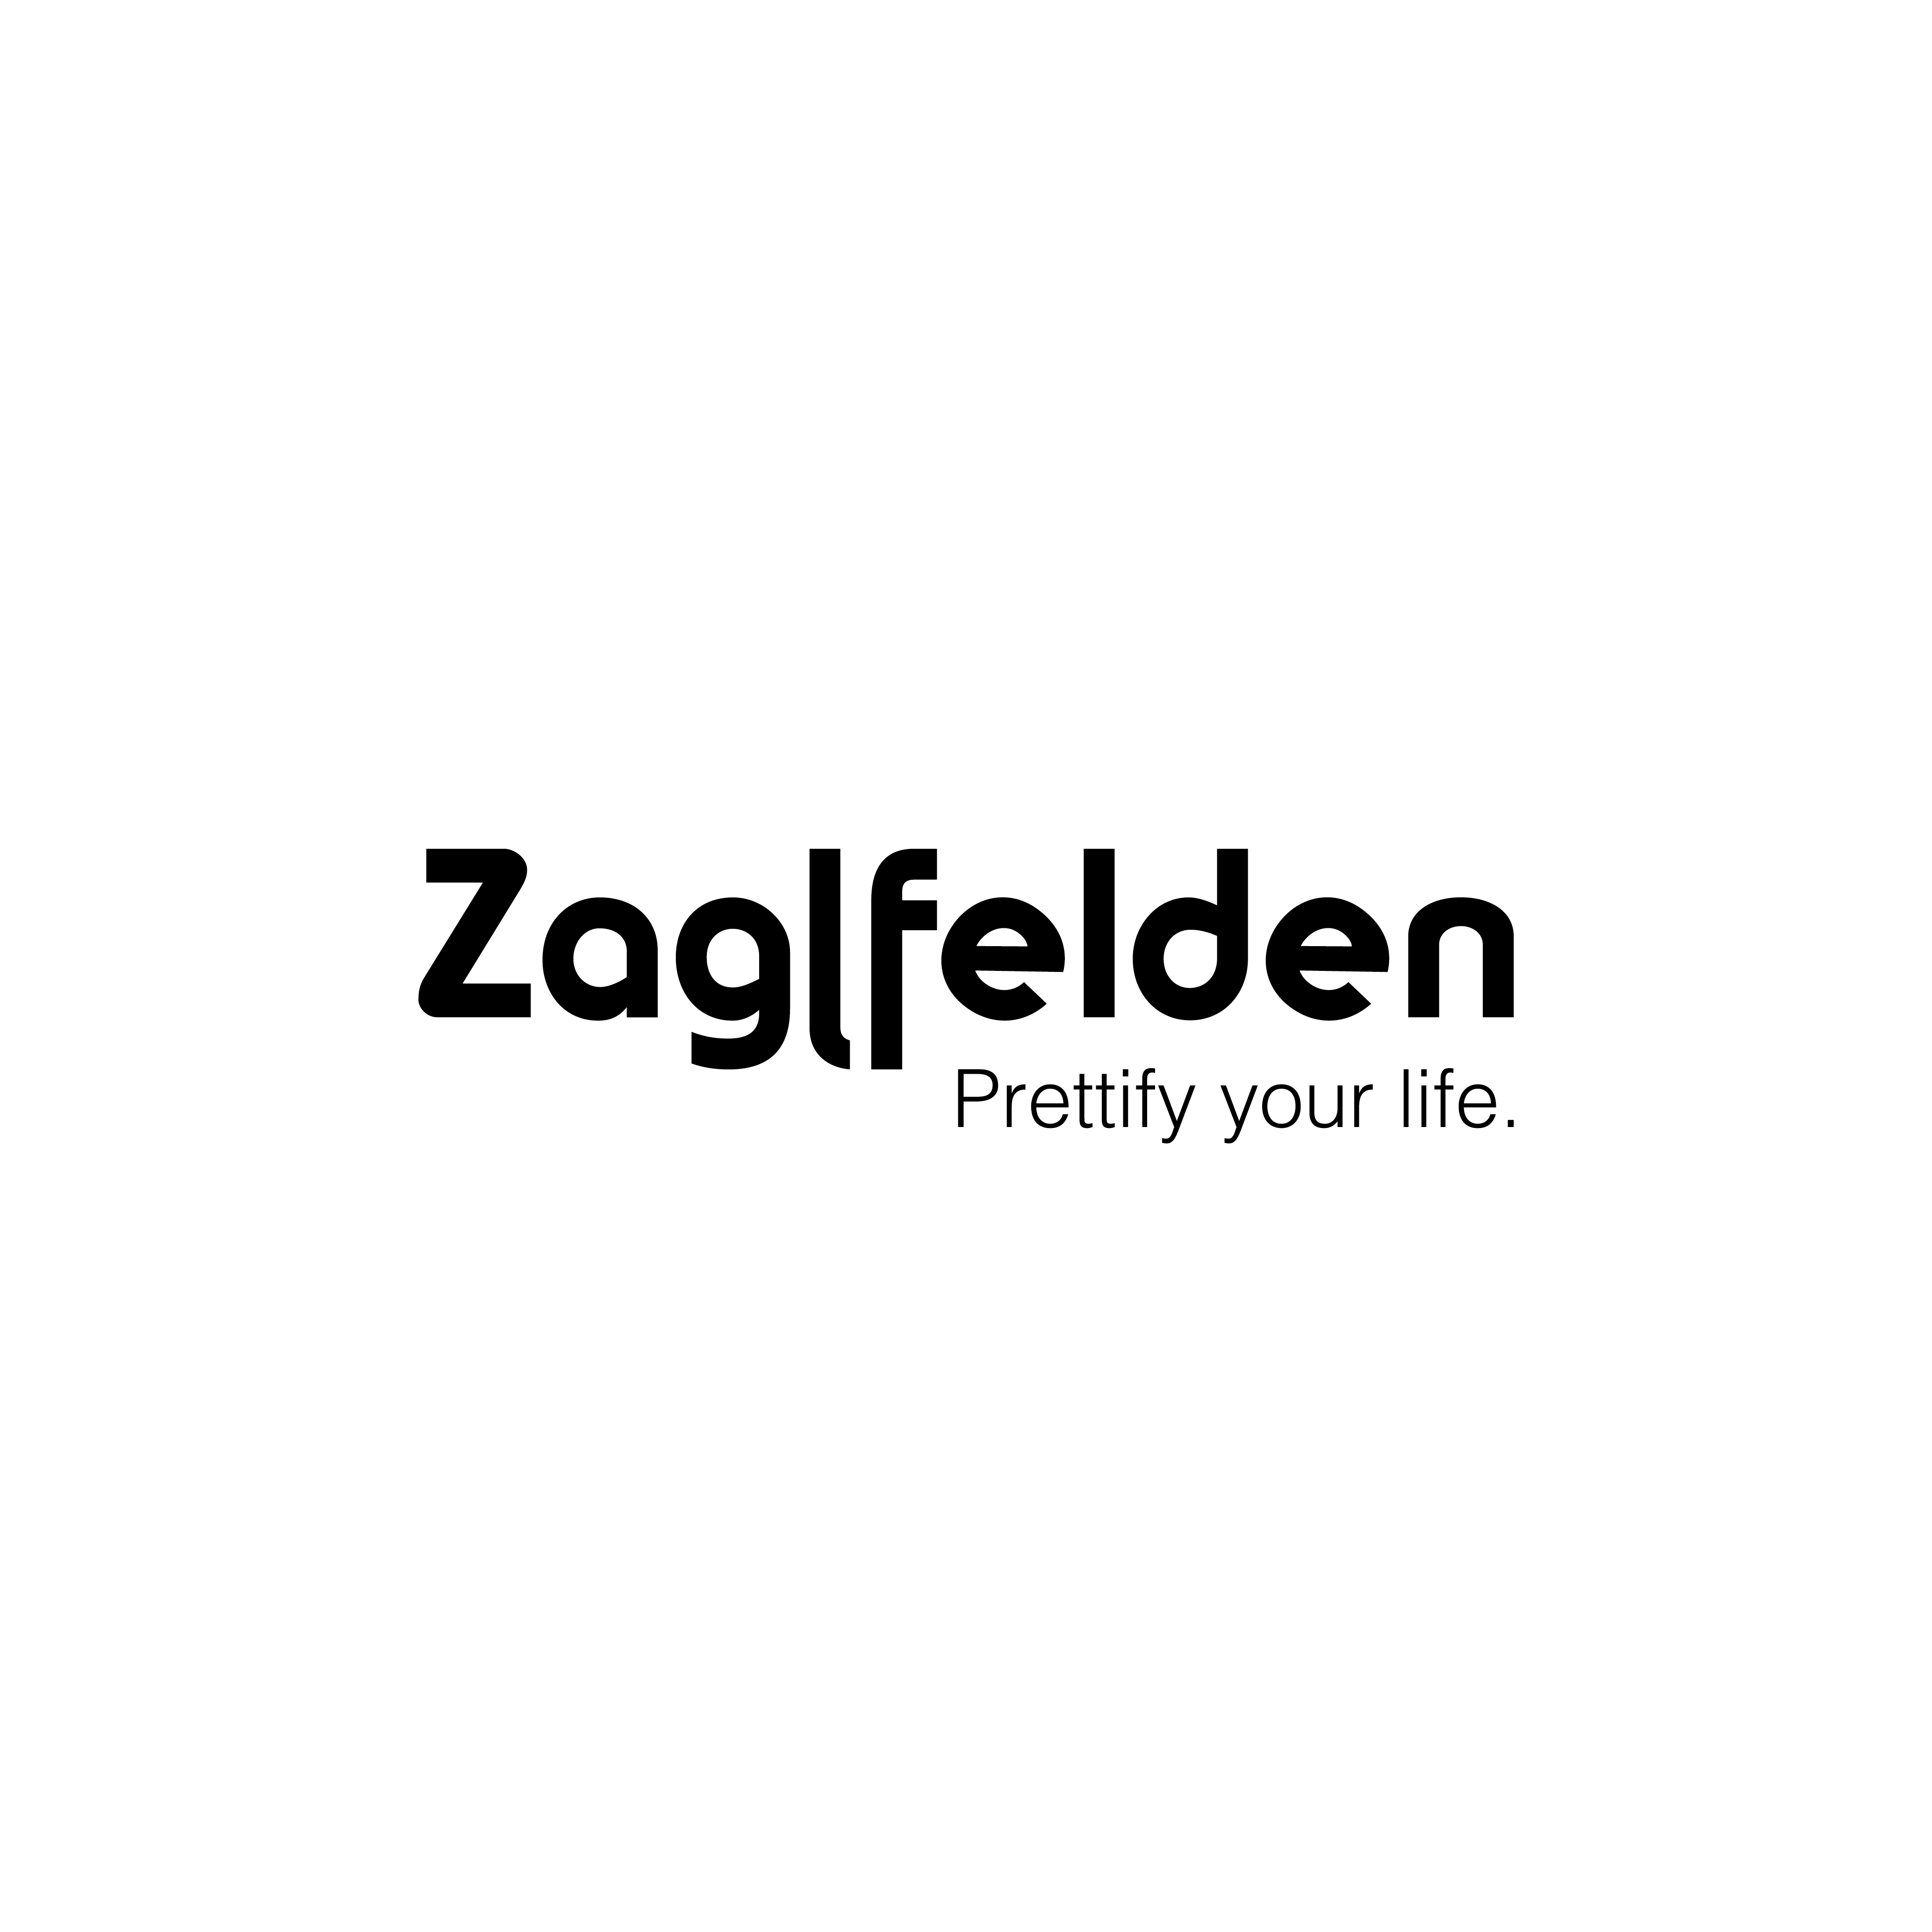 Zaglfelden - Prettify your life. Logogestaltung mit Claim. Werbefreundin - ihre Werbeagentur, Webagentur, Grafik und Design und Werbung in Linz Leonding.